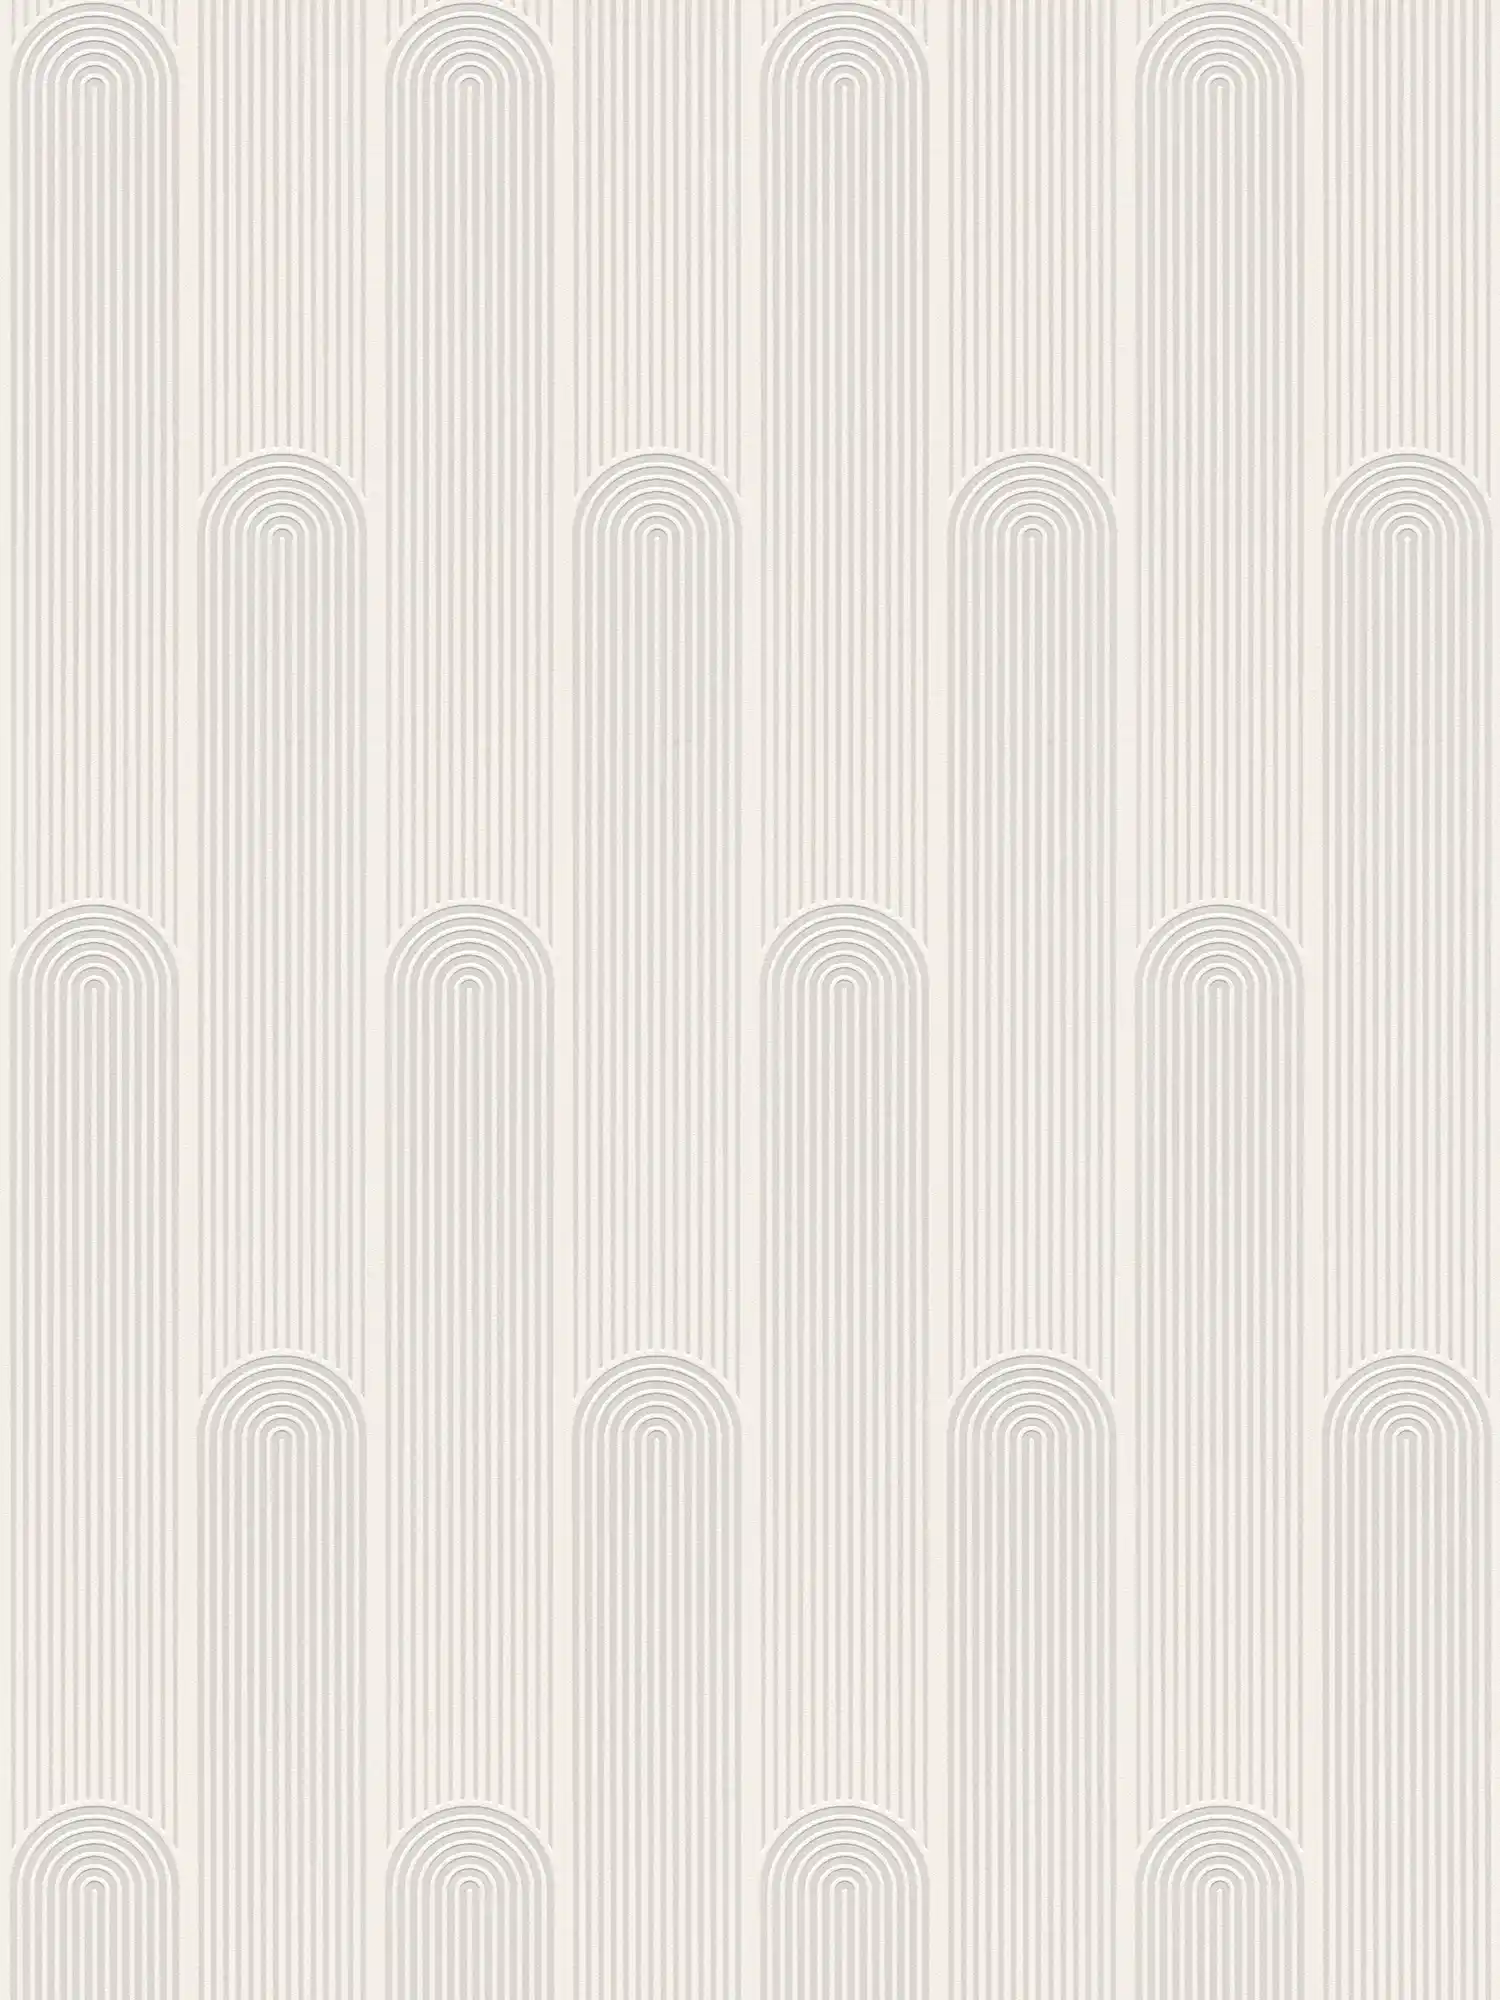 Mustertapete Retro Art Déco Linien Design – Weiß, Grau
